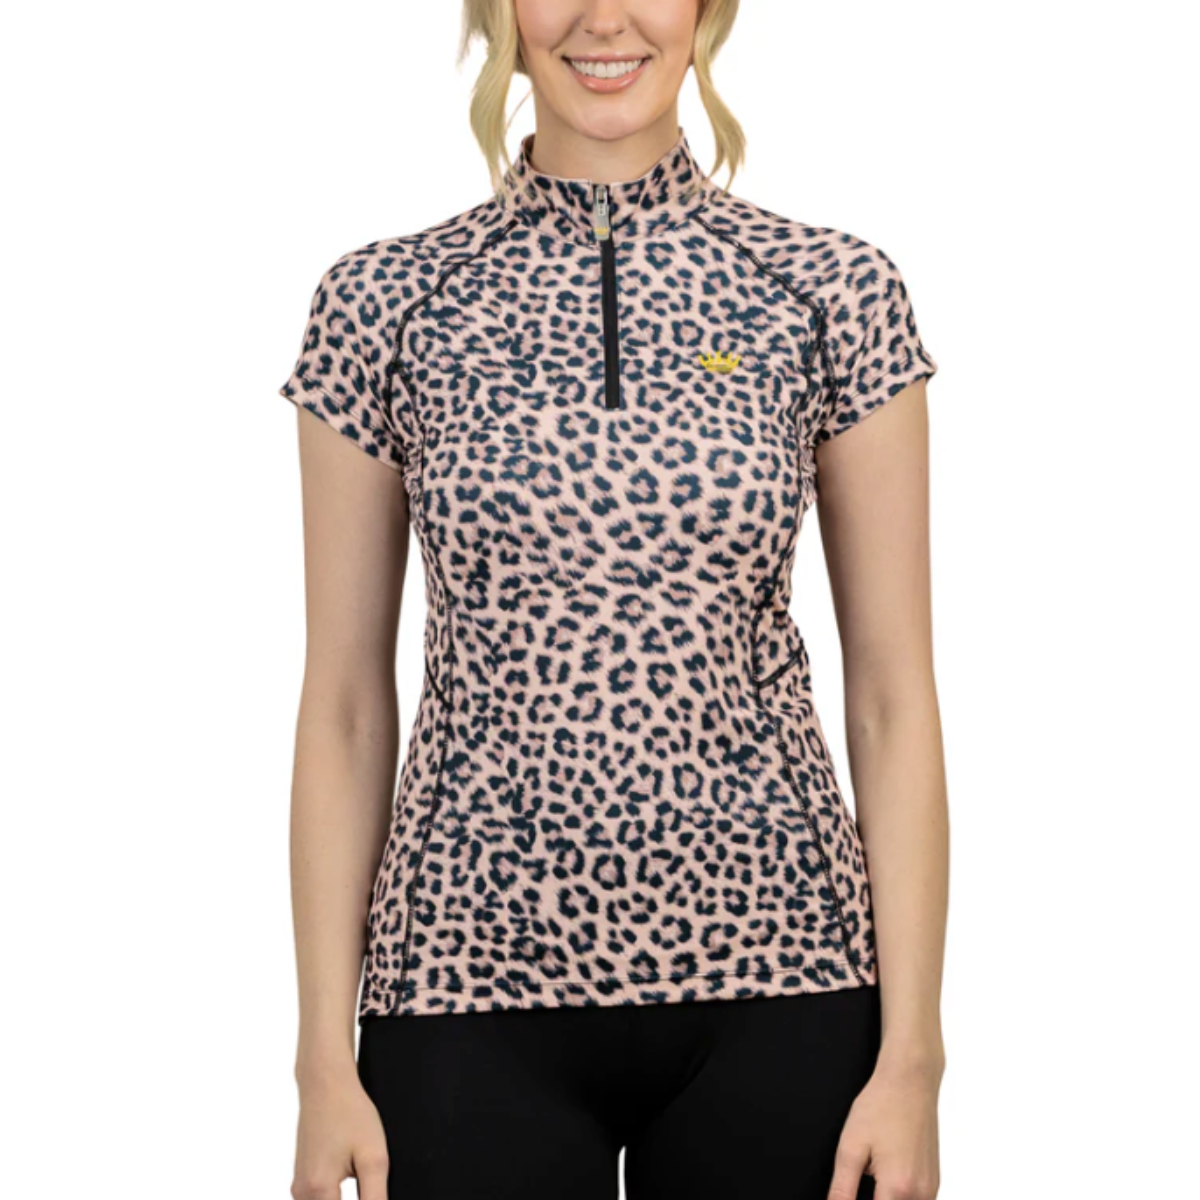 Kastel Cap Sleeve Shirt in Animal Print